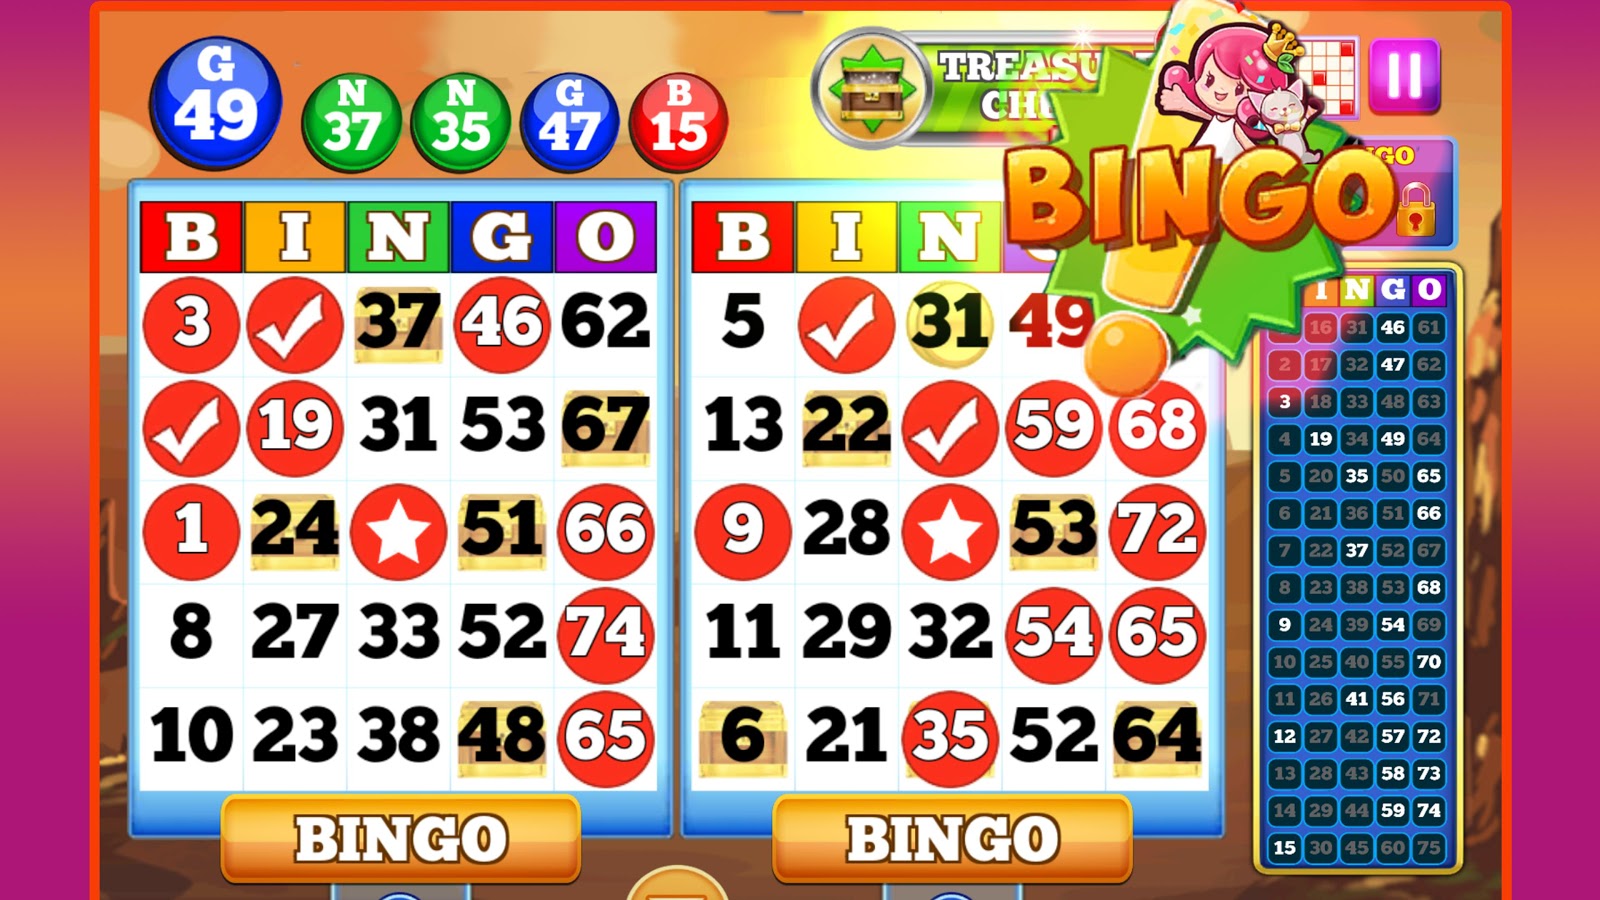 Casino en linea gratis bingo Online Portugal - 42397